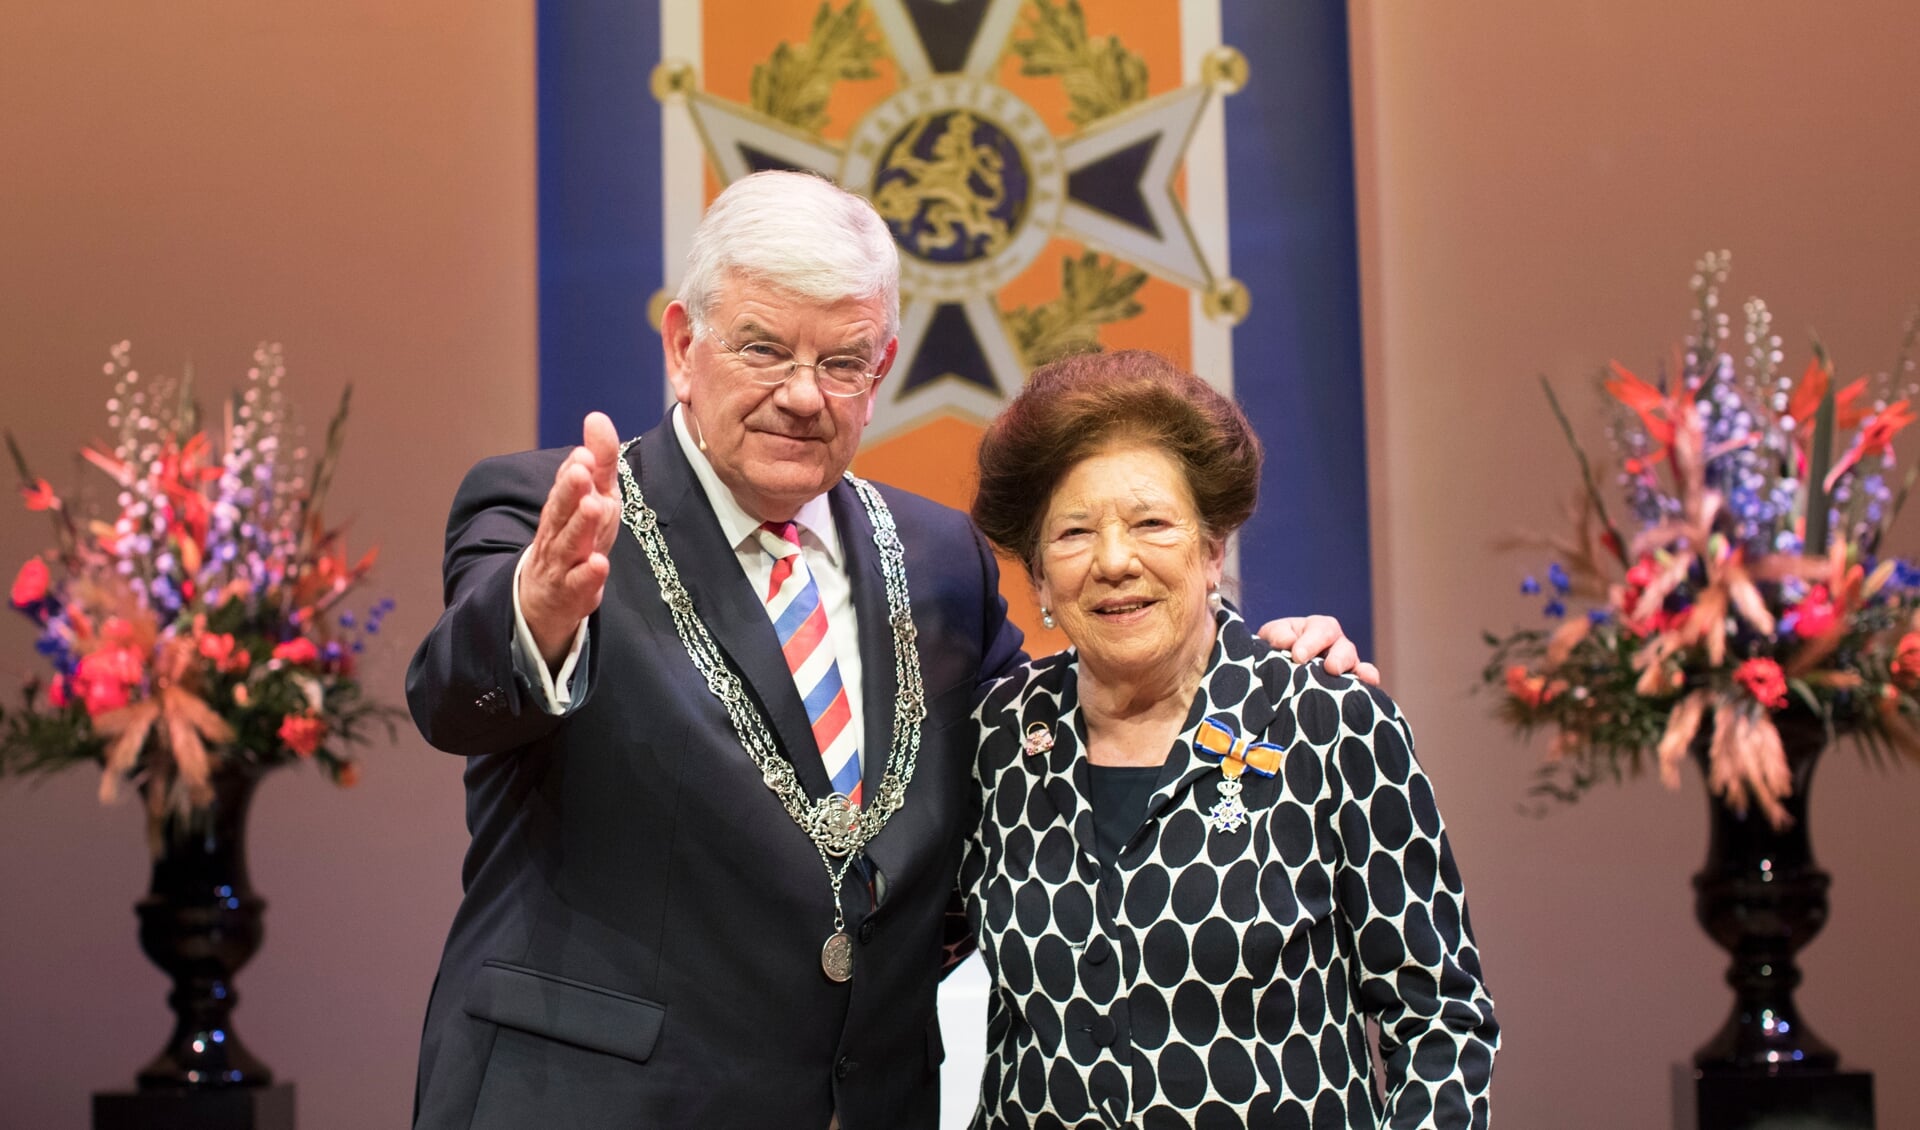 Burgemeester Van Zanen met één van de 35 inwoners van Den Haag die vandaag een lintje ontvingen. 